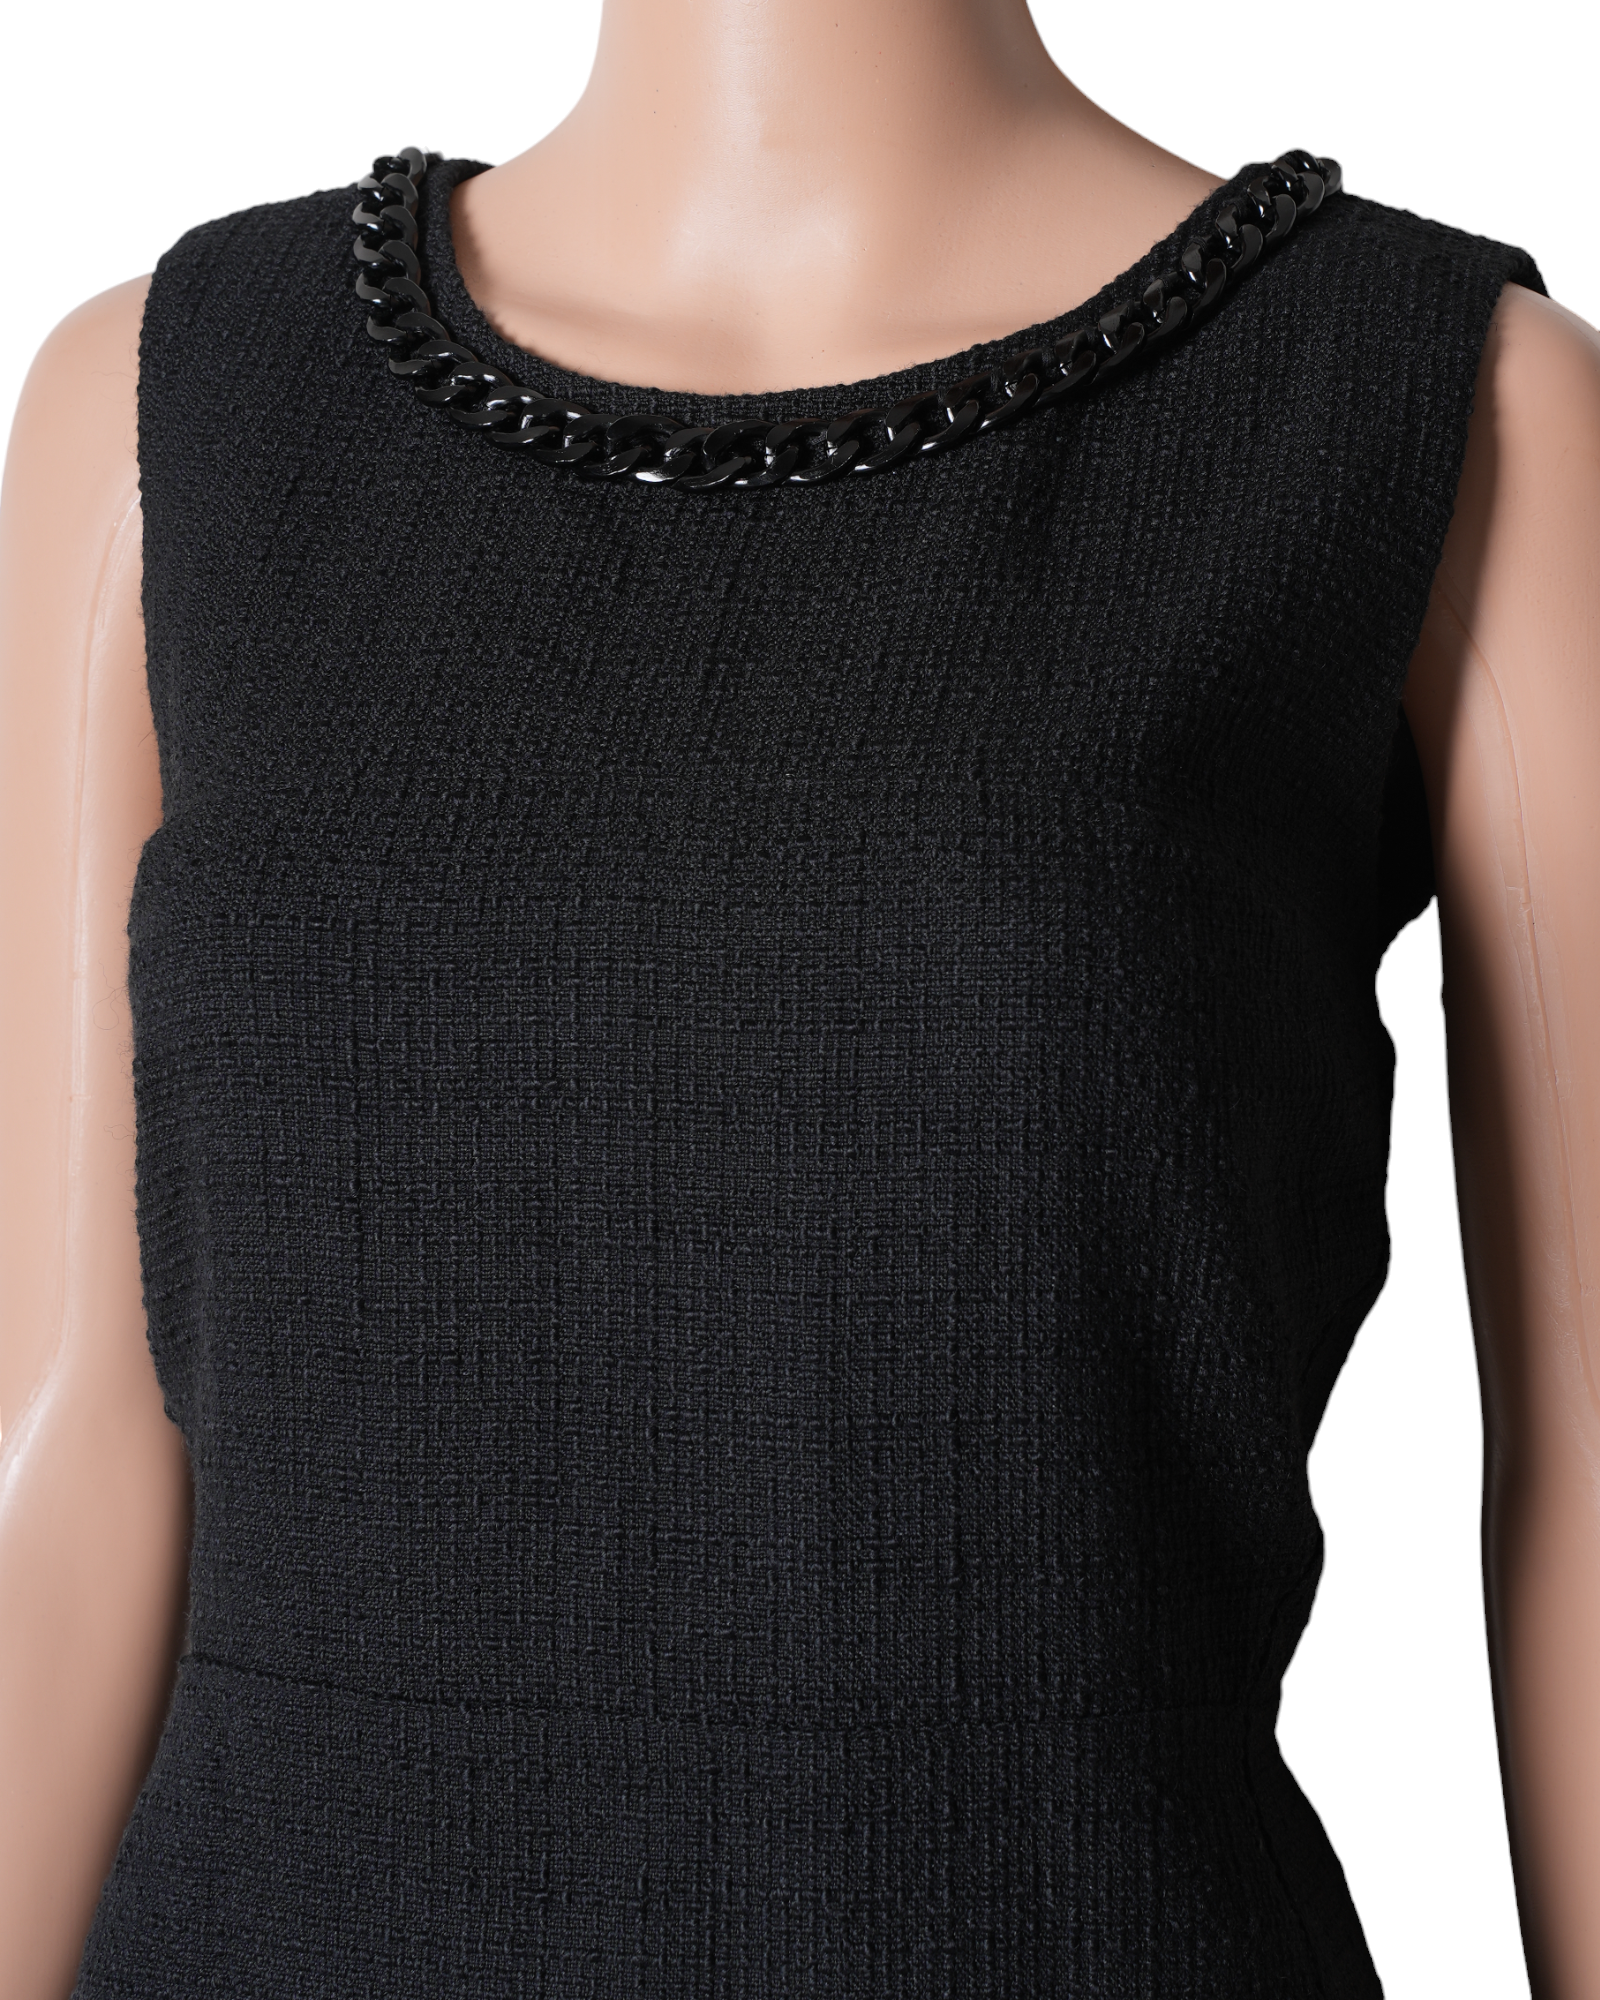 Karl Legarfeld For Coverstory Multi Tweed Black Dress